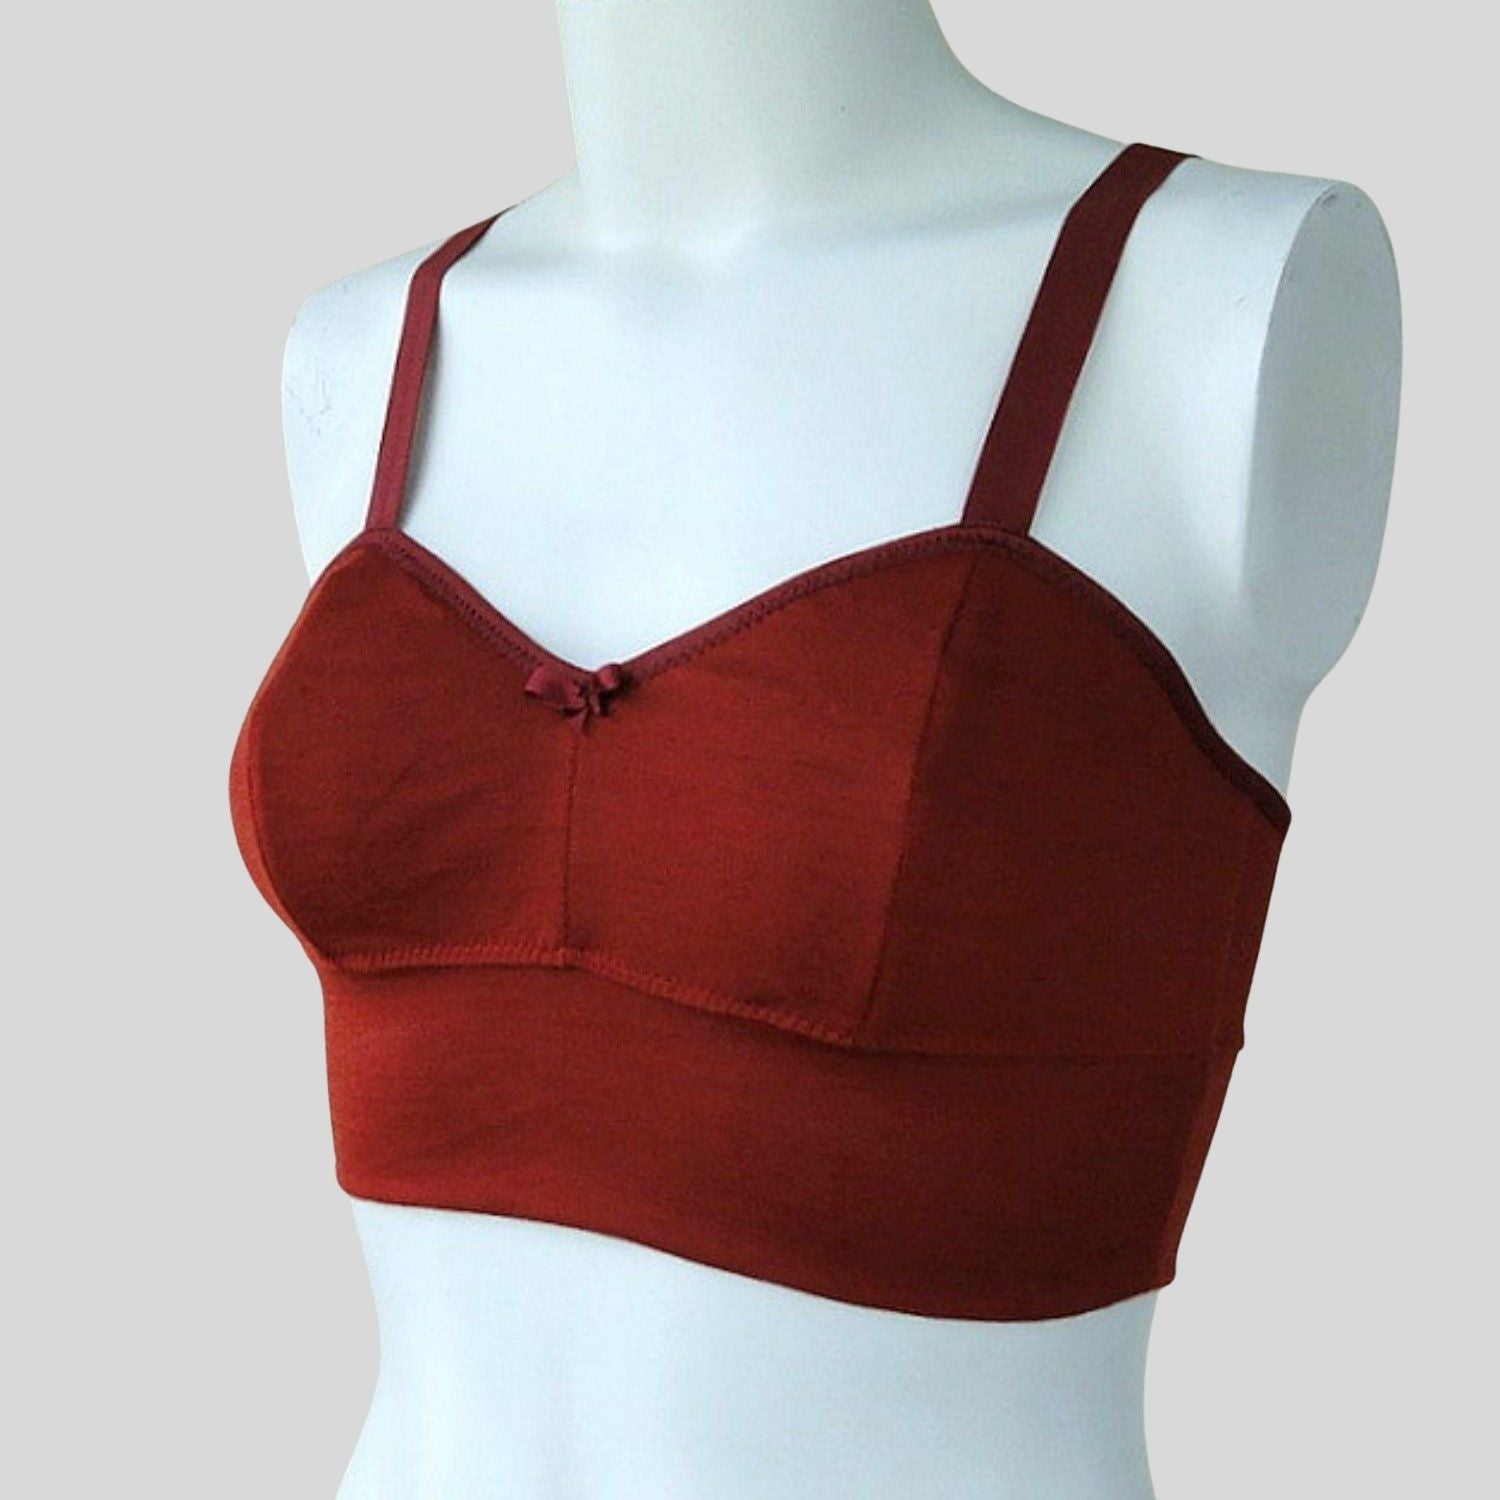 Merino wool bras women's  Shop Wool bra tops underwear from